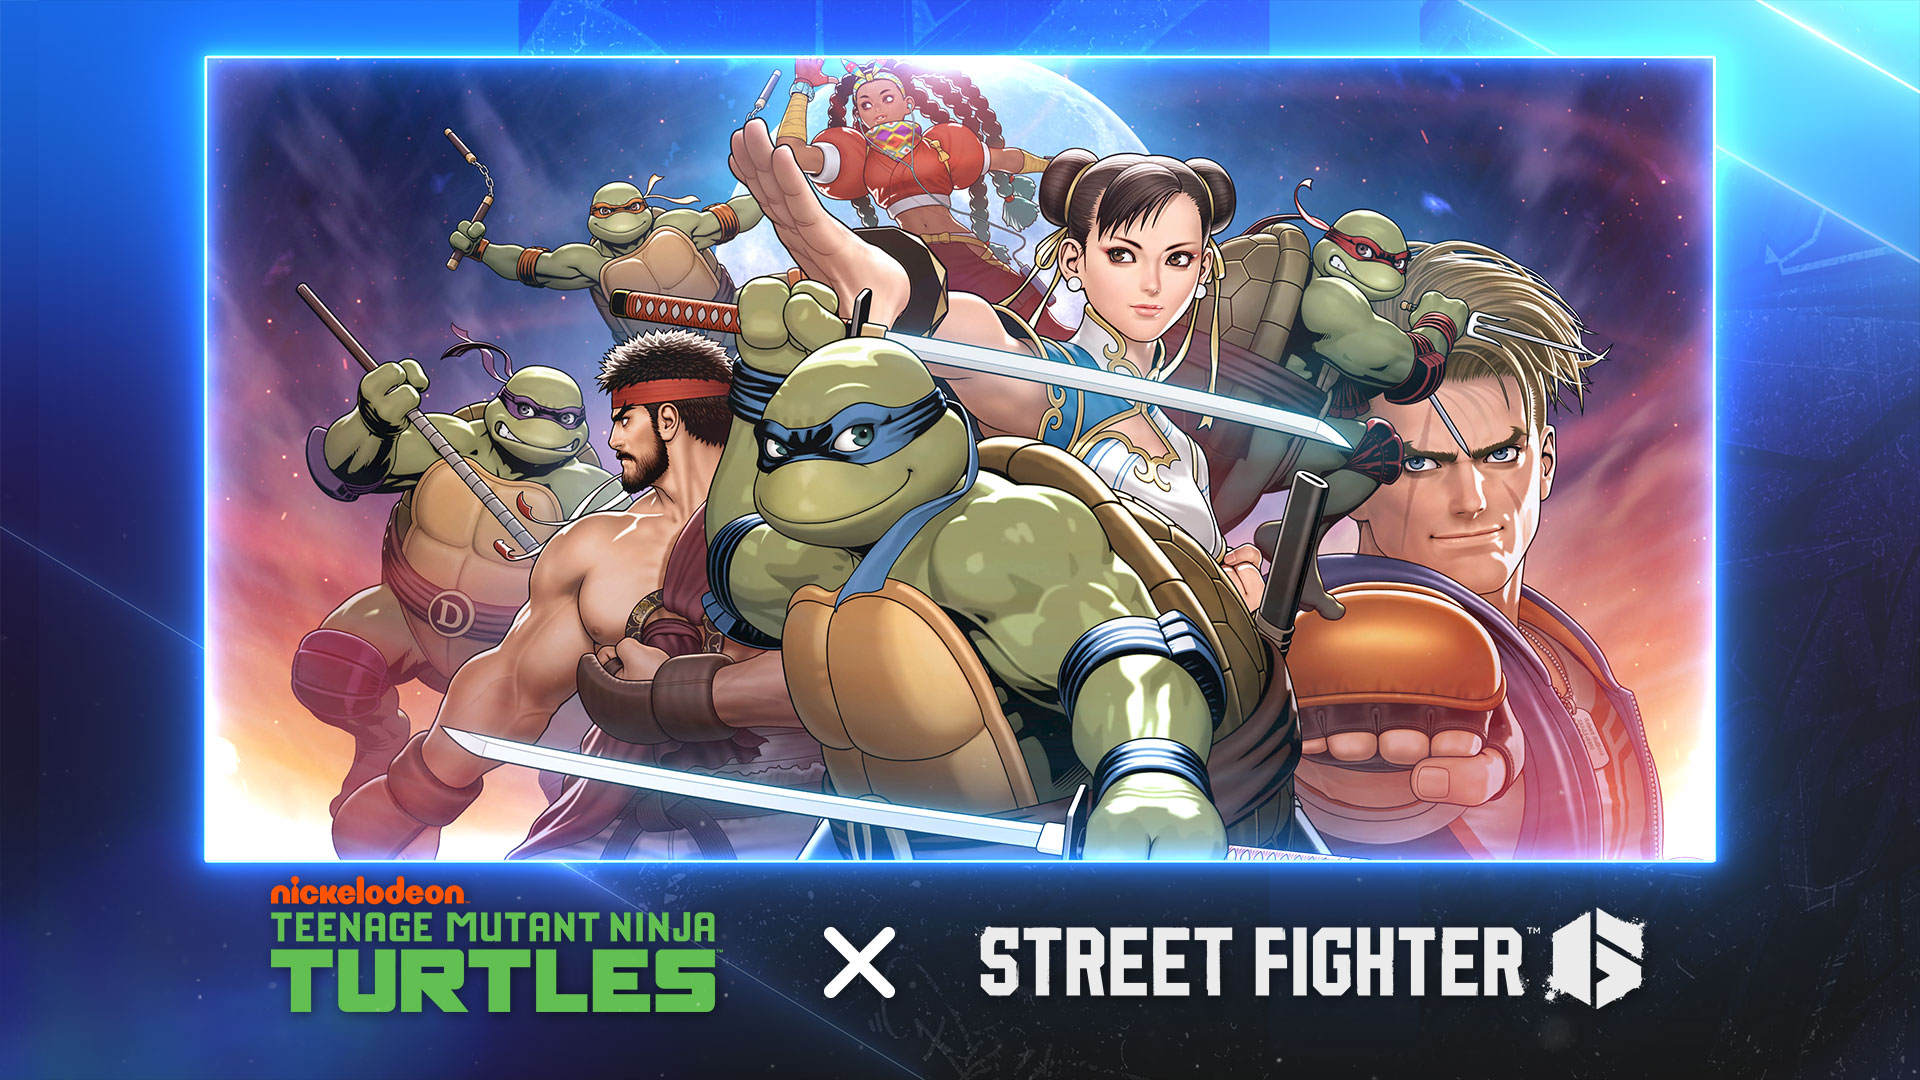 The Teenage Mutant Ninja Turtles are heading to Street Fighter 6